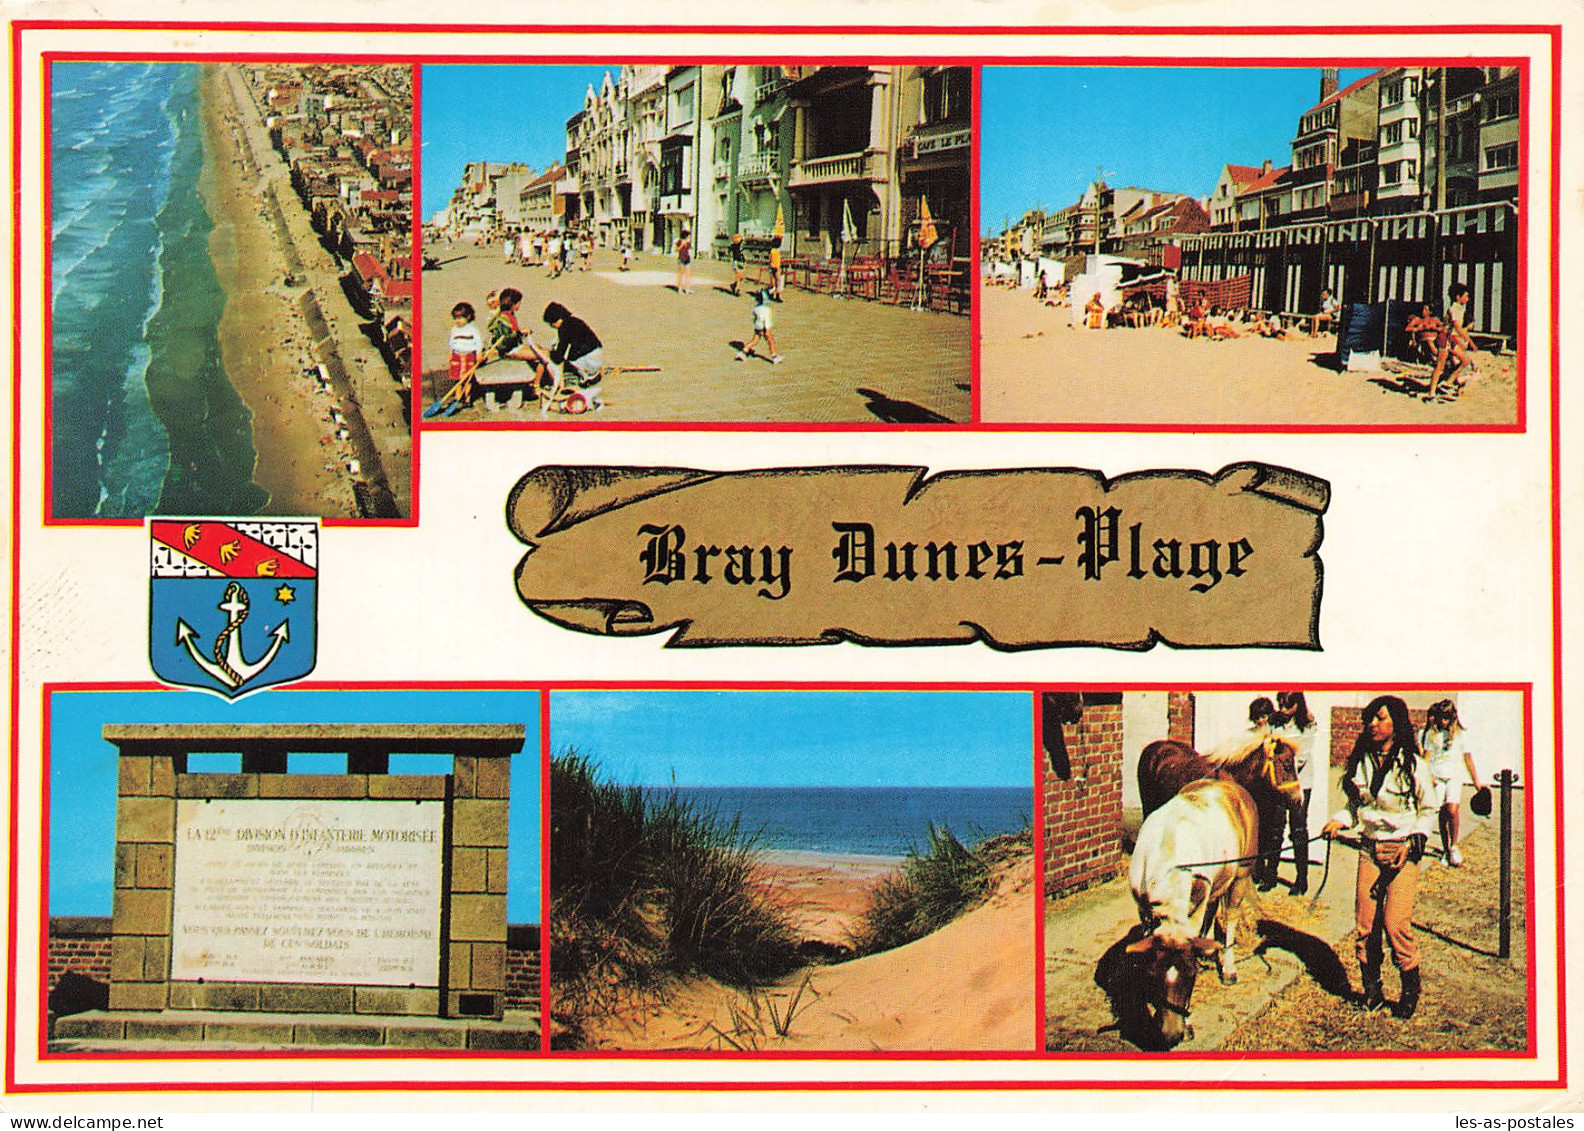 59 BRAY DUNES - Bray-Dunes